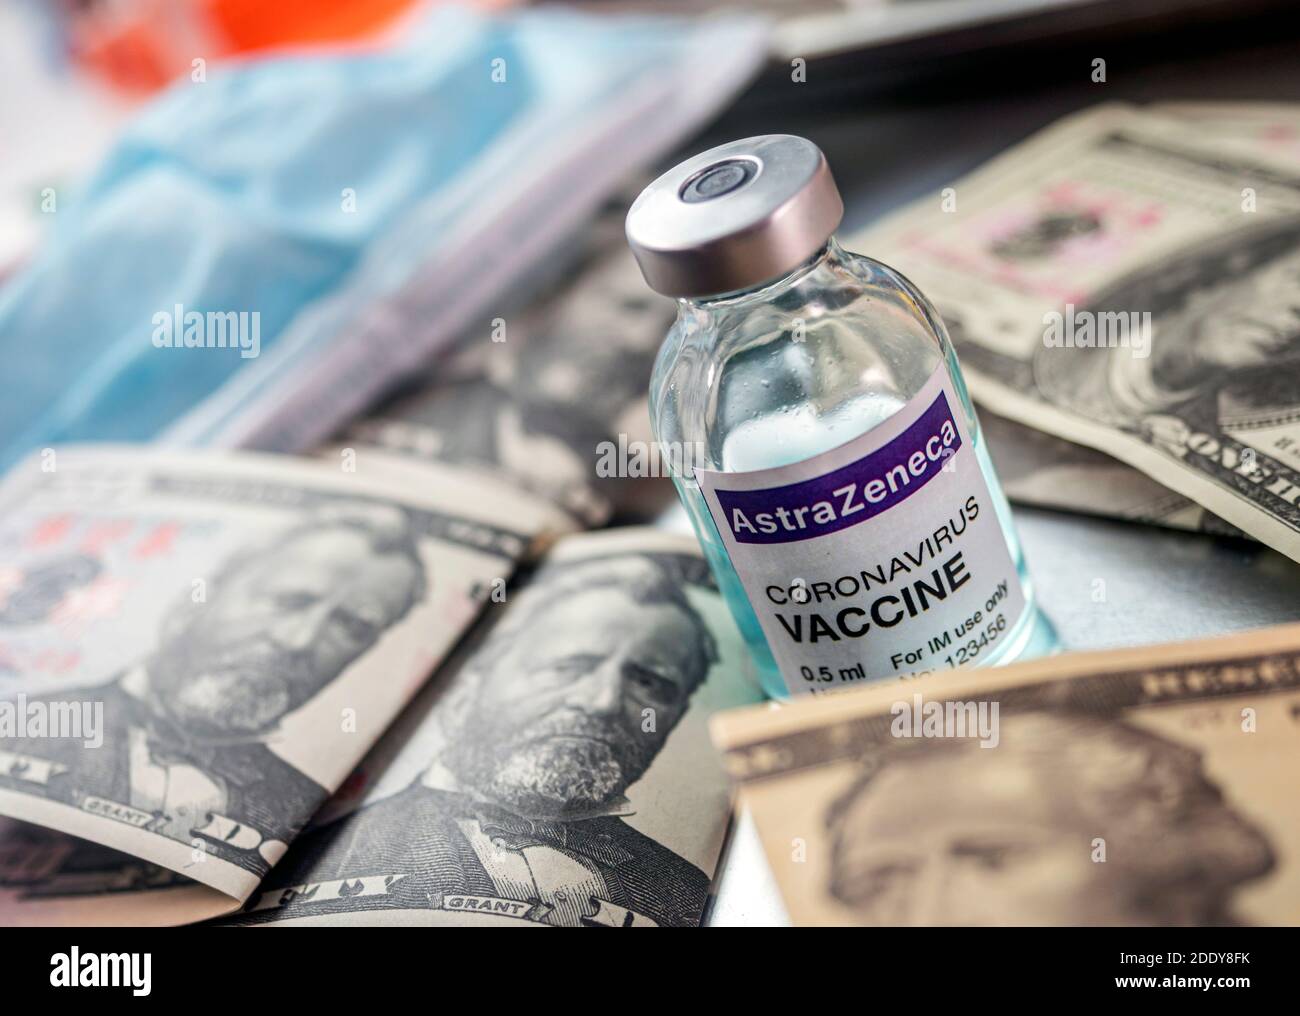 Vaccin contre le coronavirus Covid-19 pour le plan de vaccination avec billets de banque, image conceptuelle, traitement expérimental récréatif fictif Banque D'Images